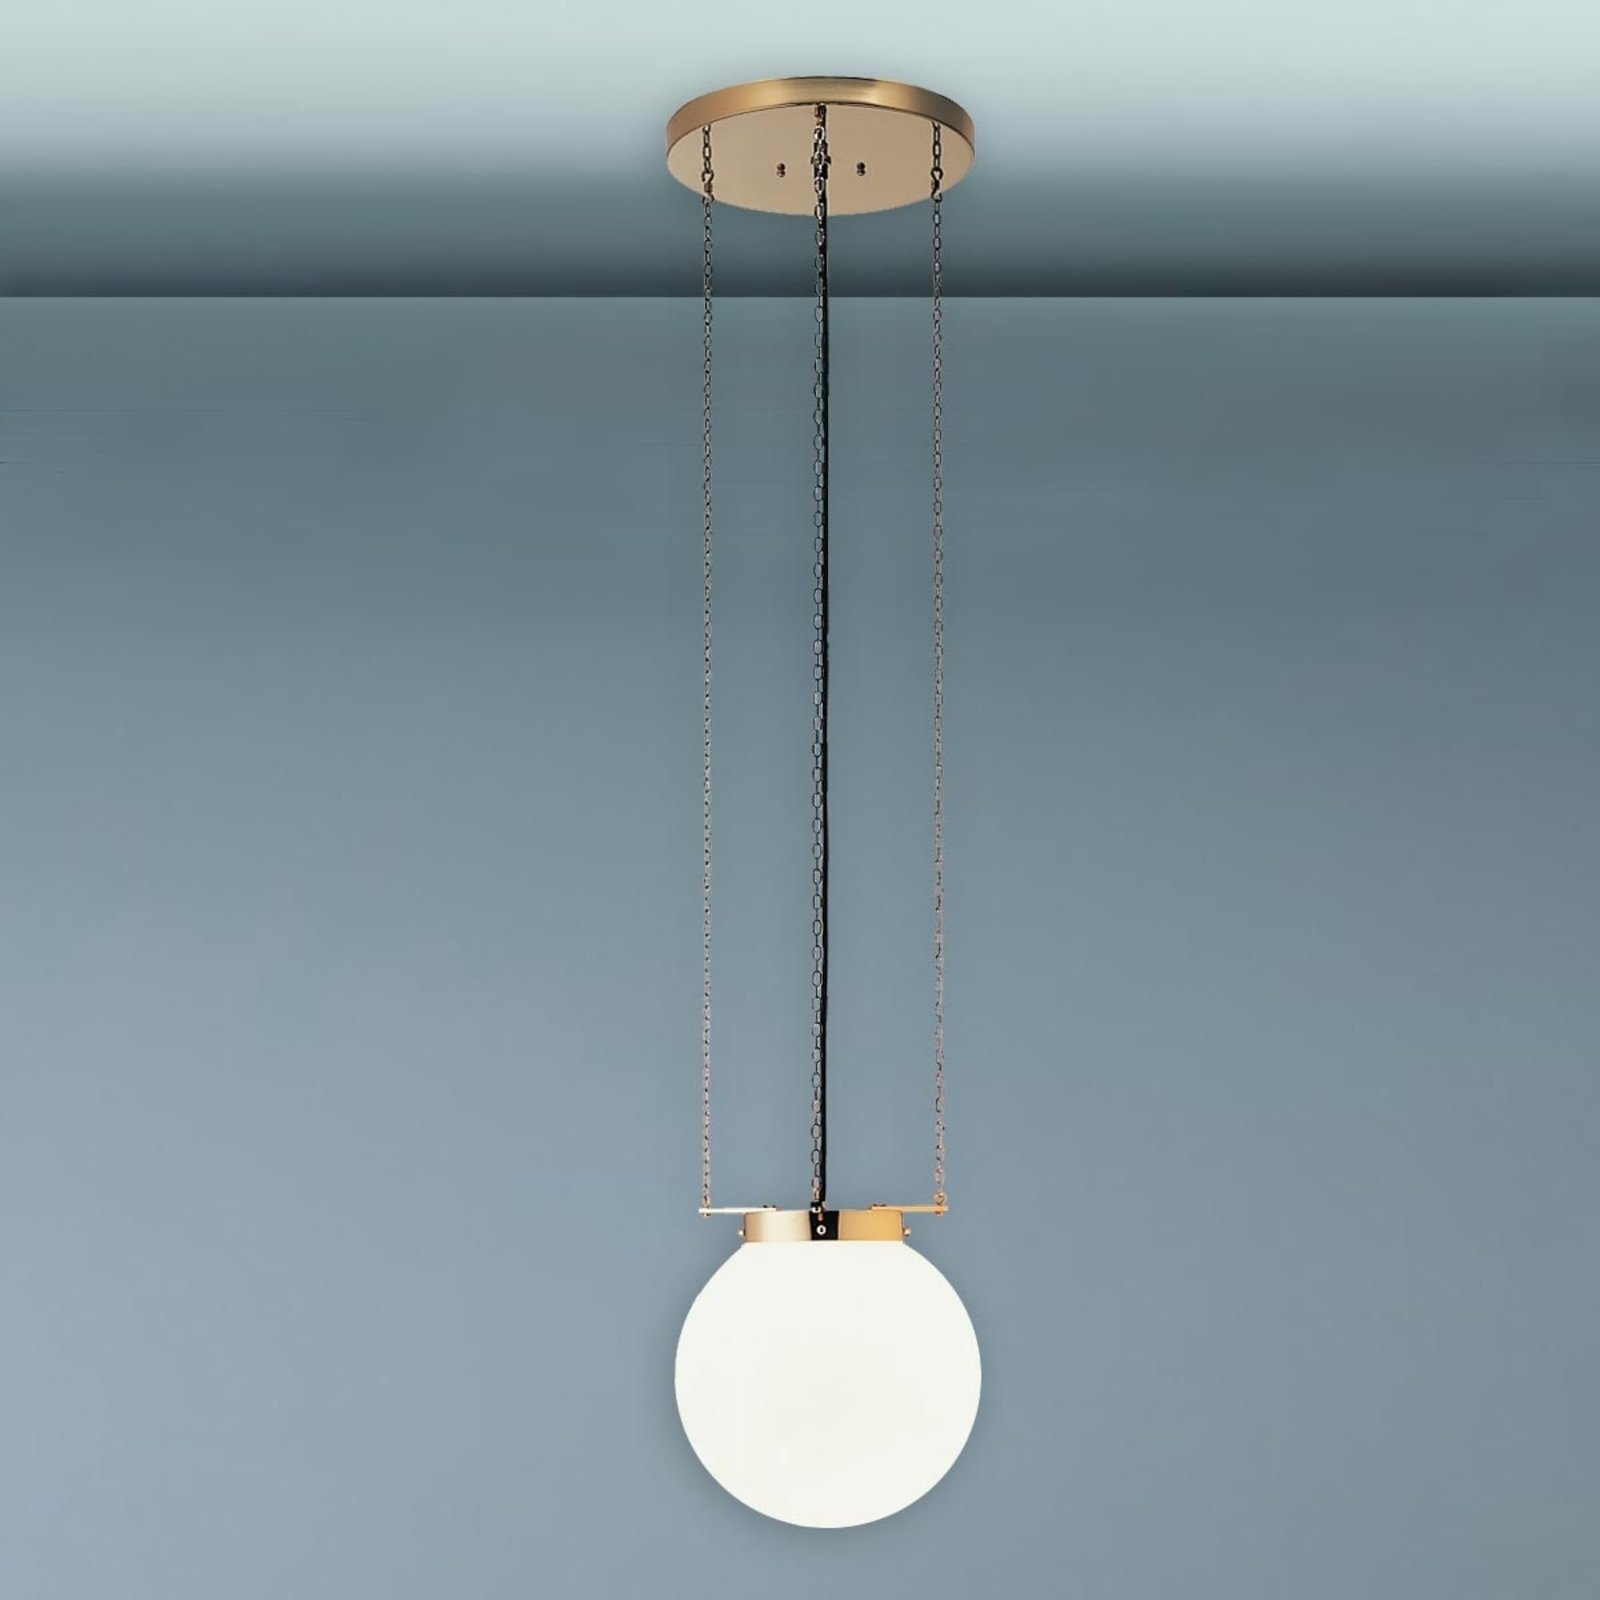 Hanglamp in Bauhaus-stijl, messing, 40 cm